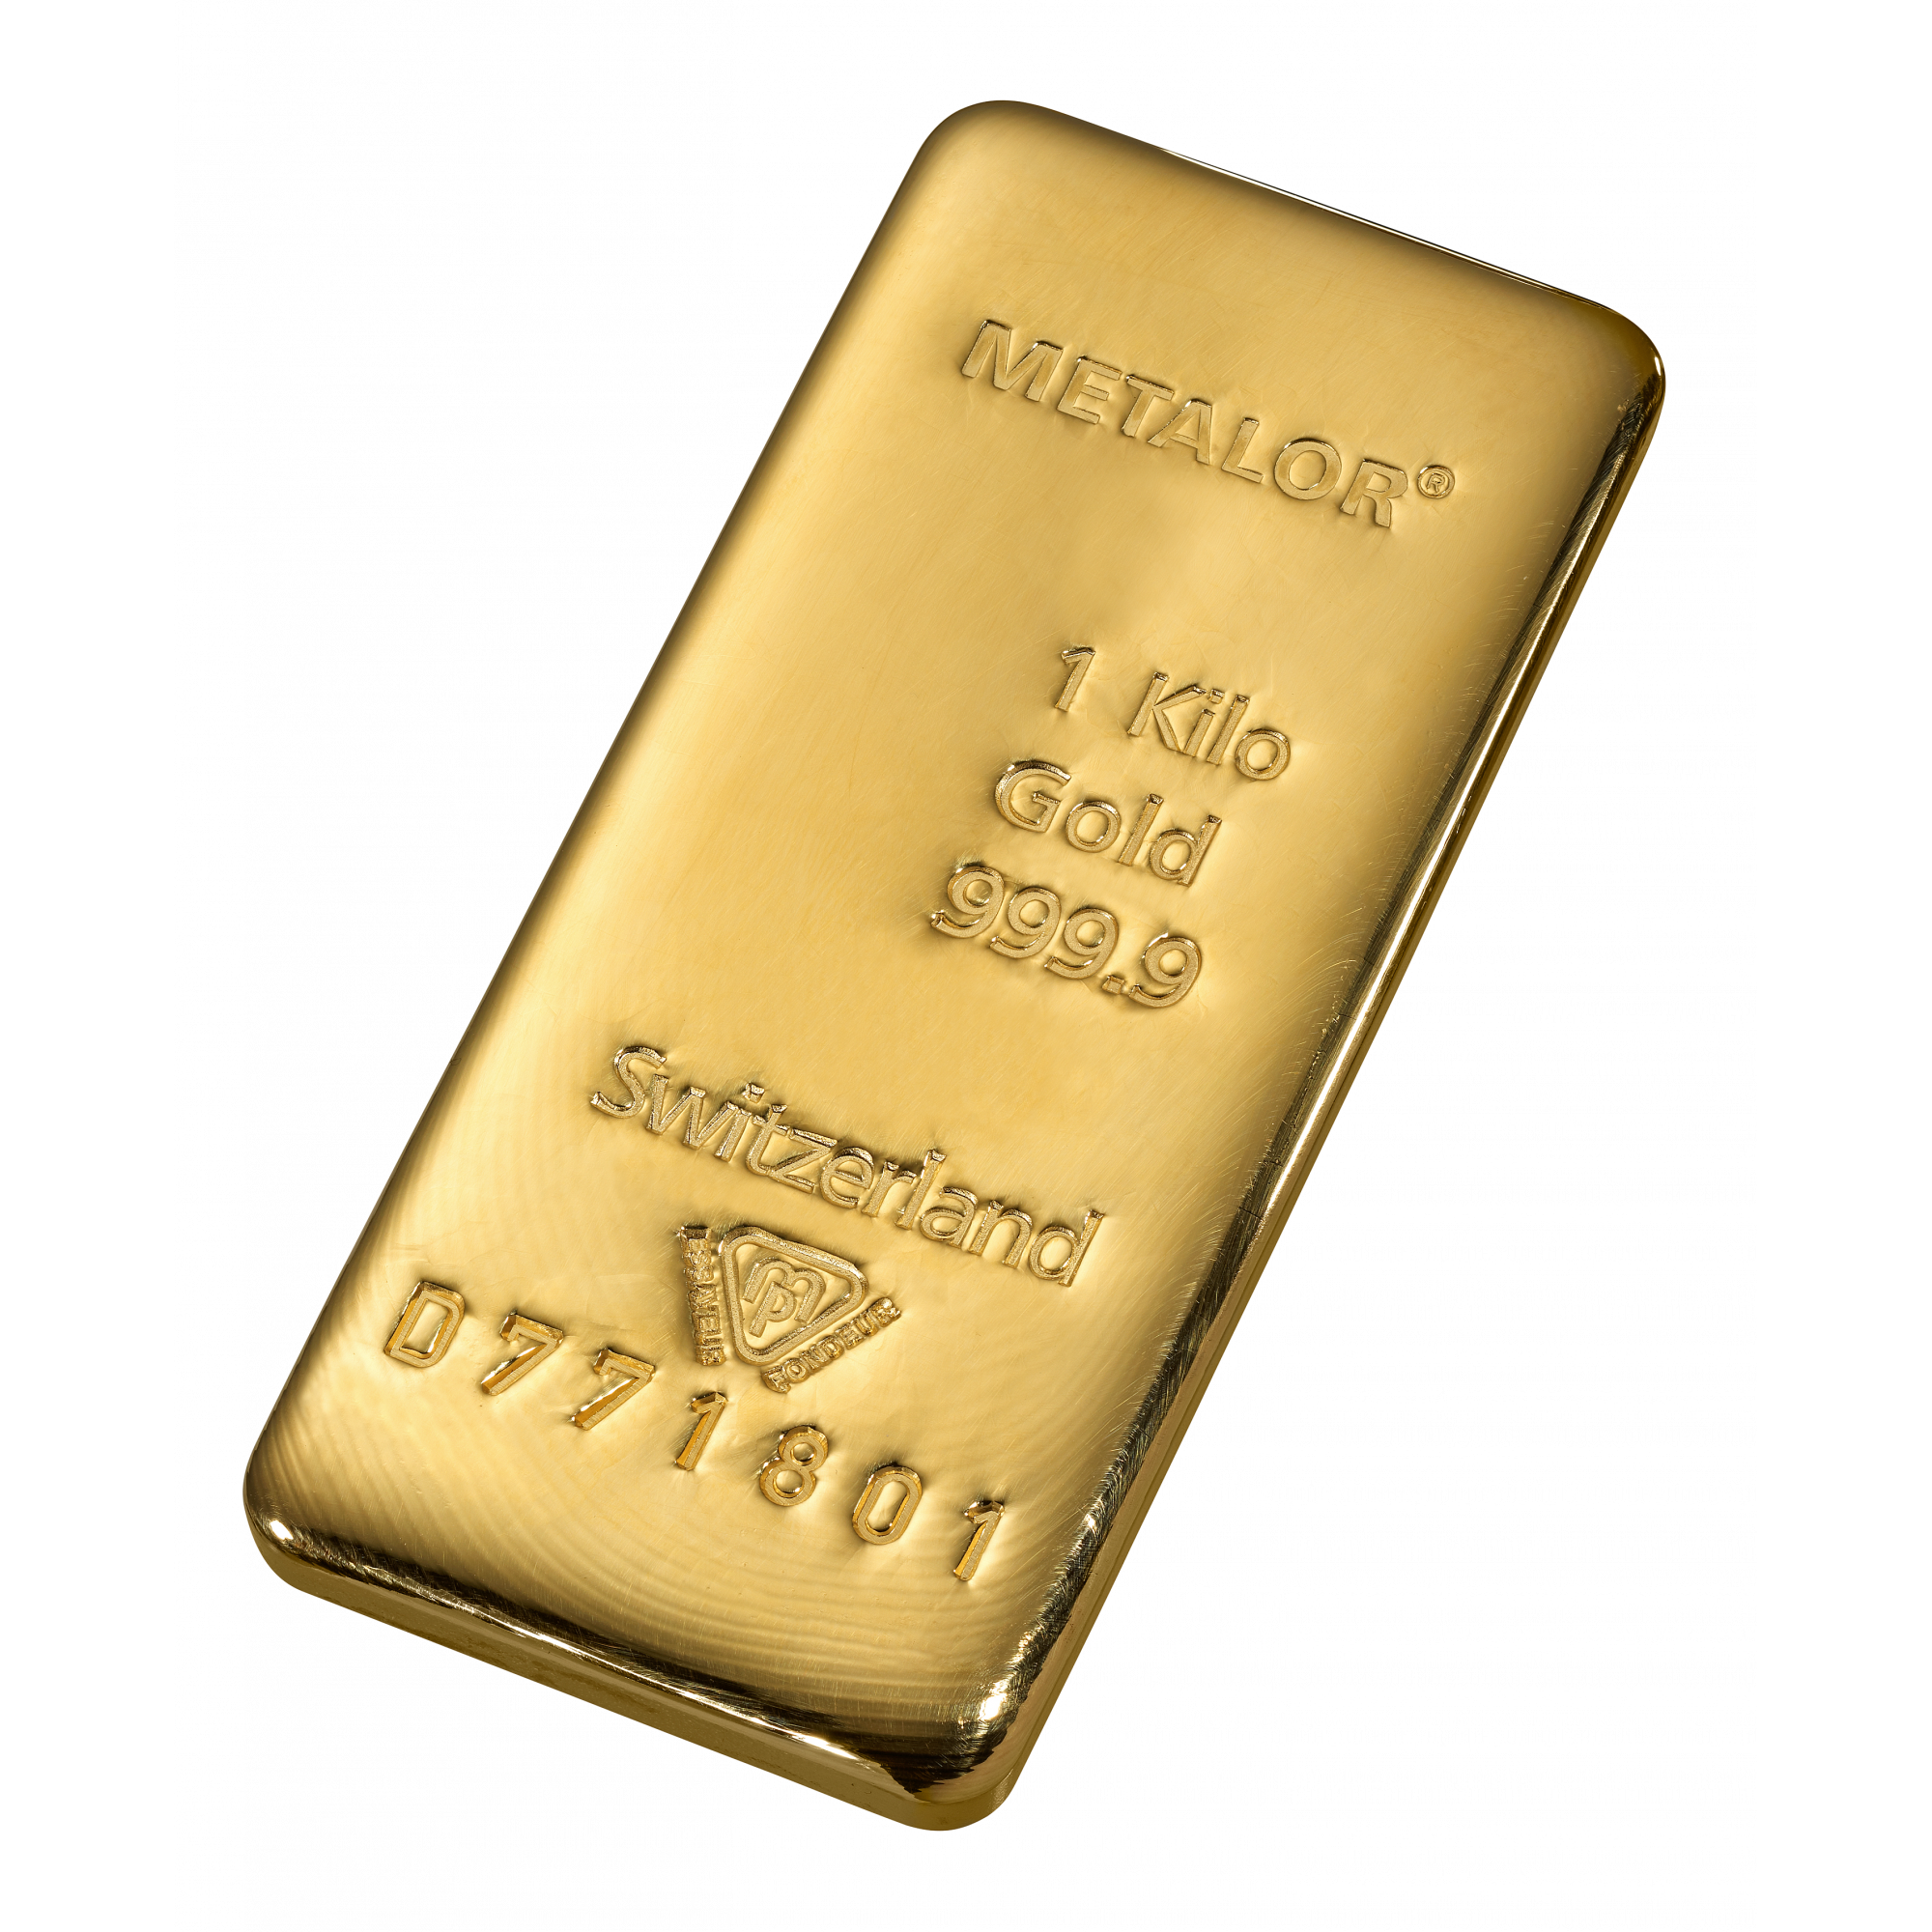 Gelovige Heer Atletisch 1 kilo goud - Aankoop en verkoop goudprijs - beleggen in goud